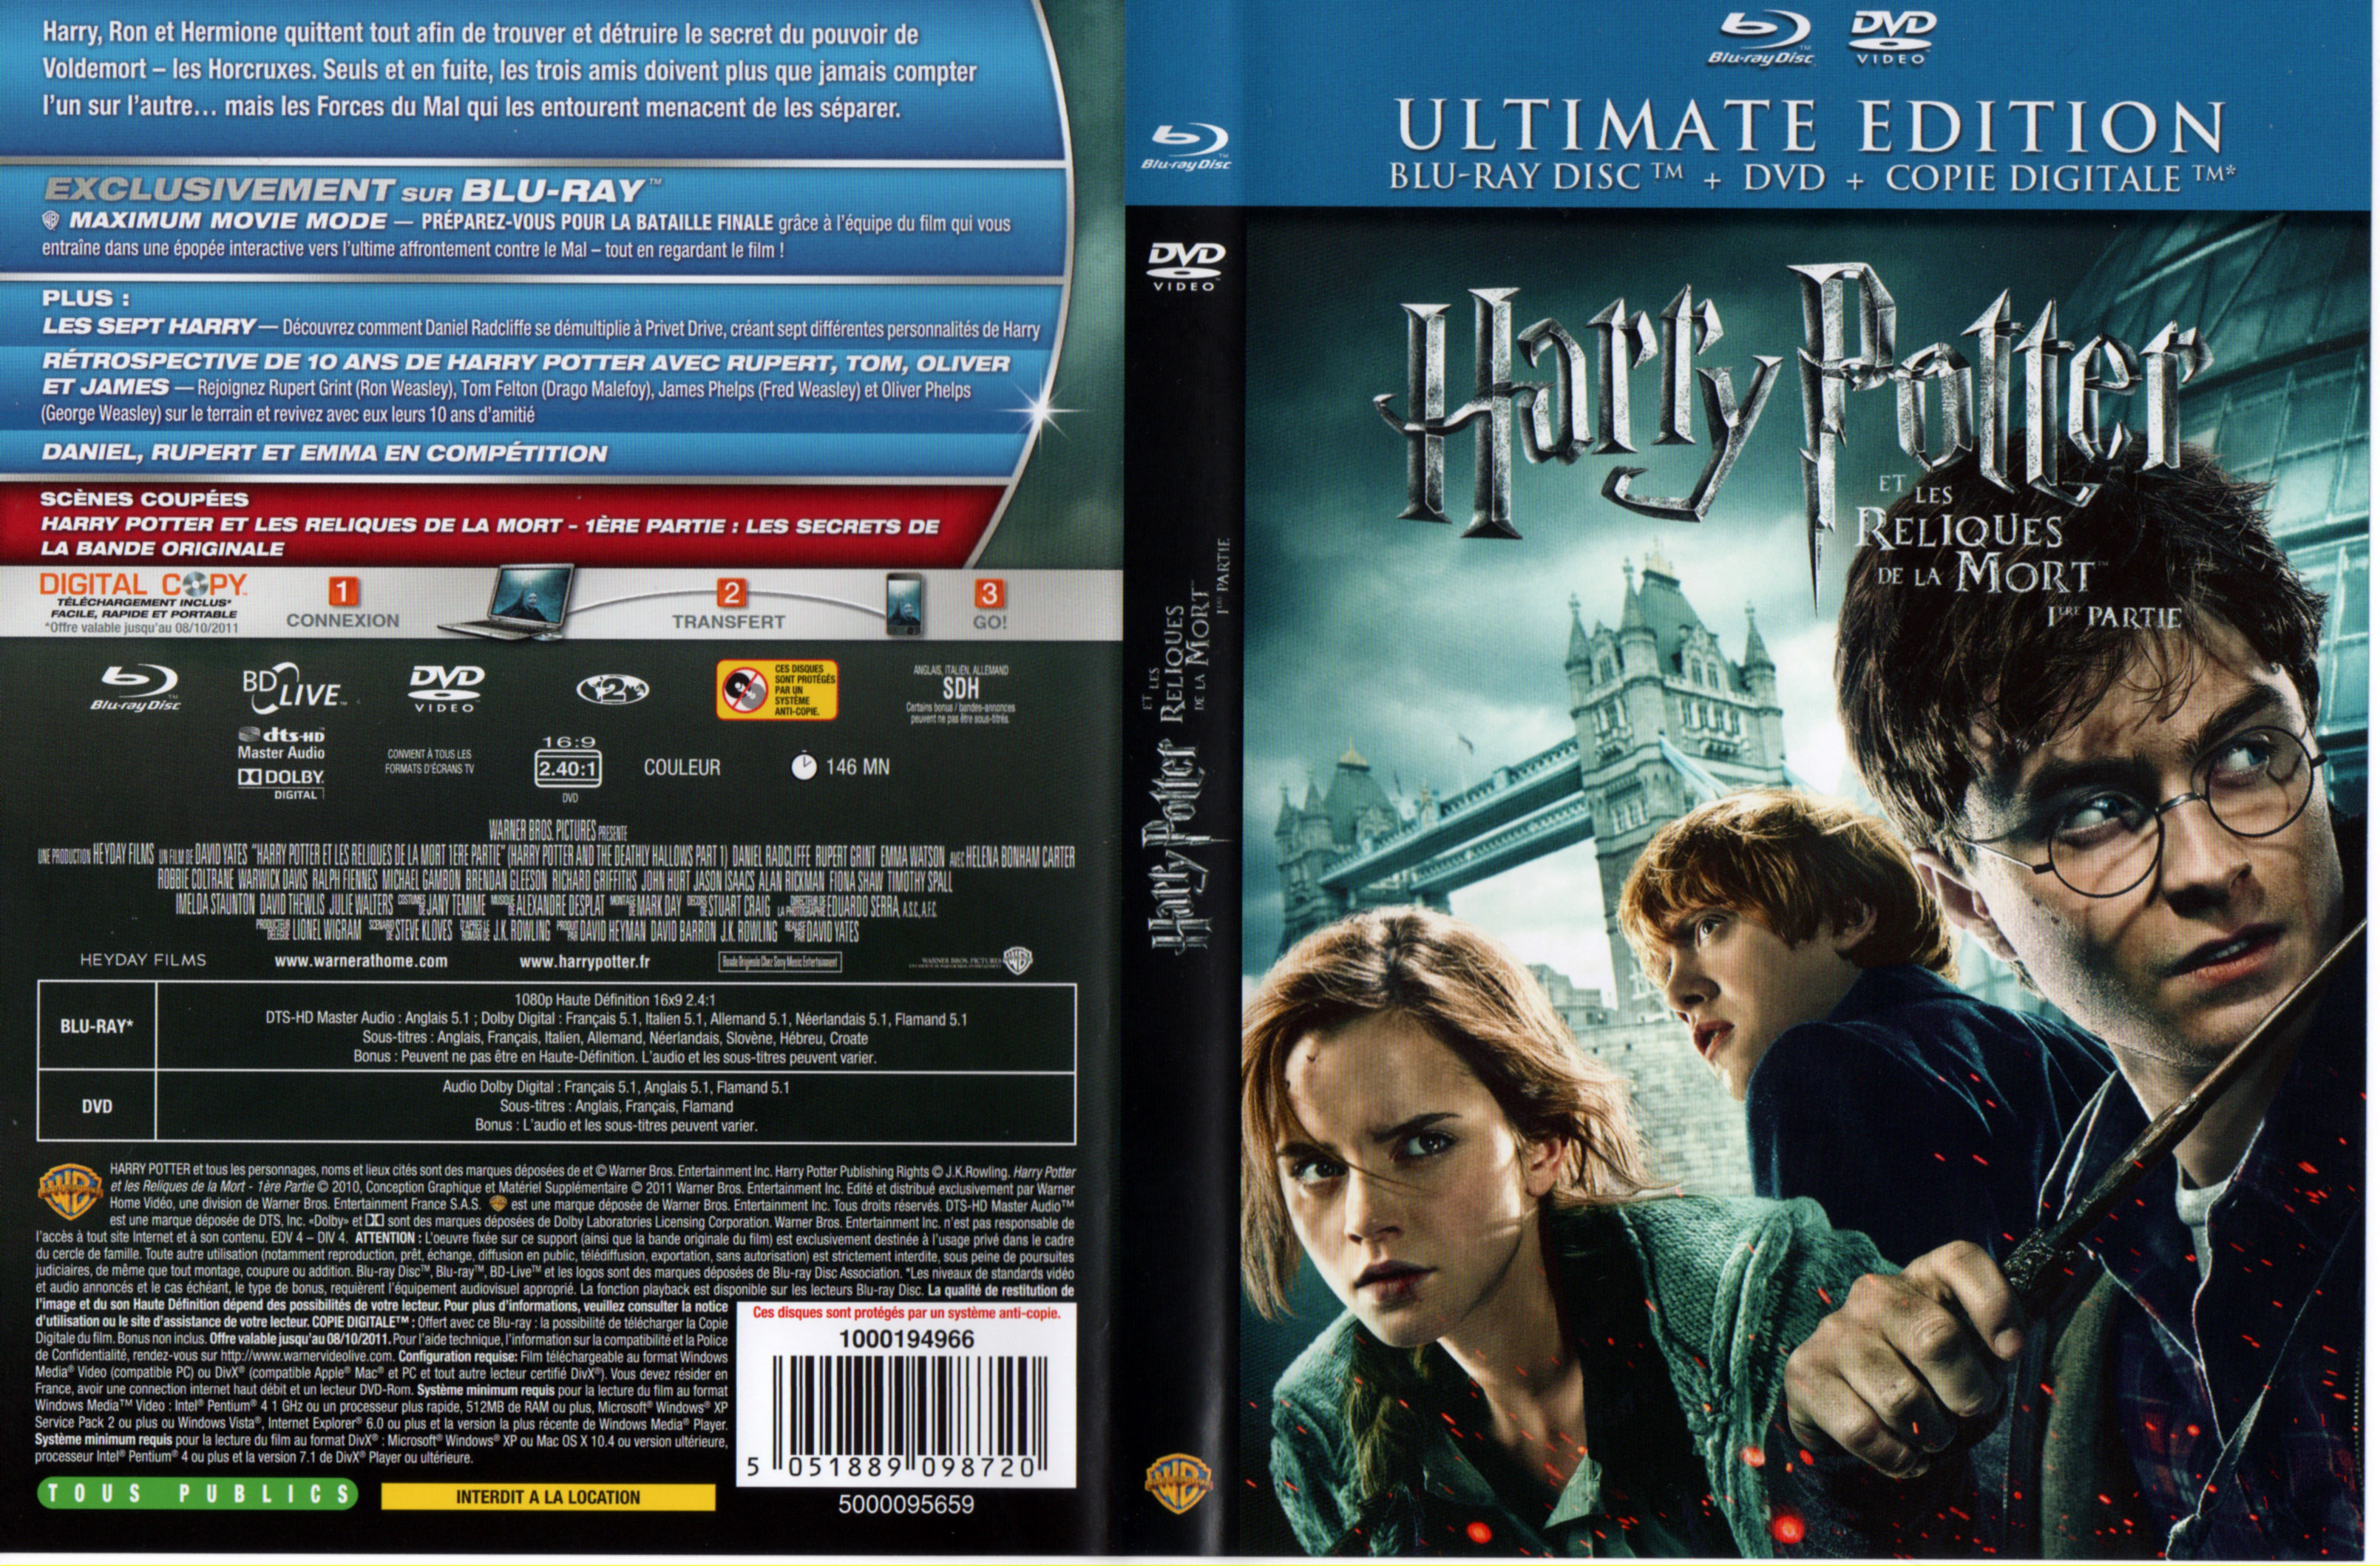 Jaquette DVD Harry Potter et les reliques de la mort - 1re partie (BLU-RAY)